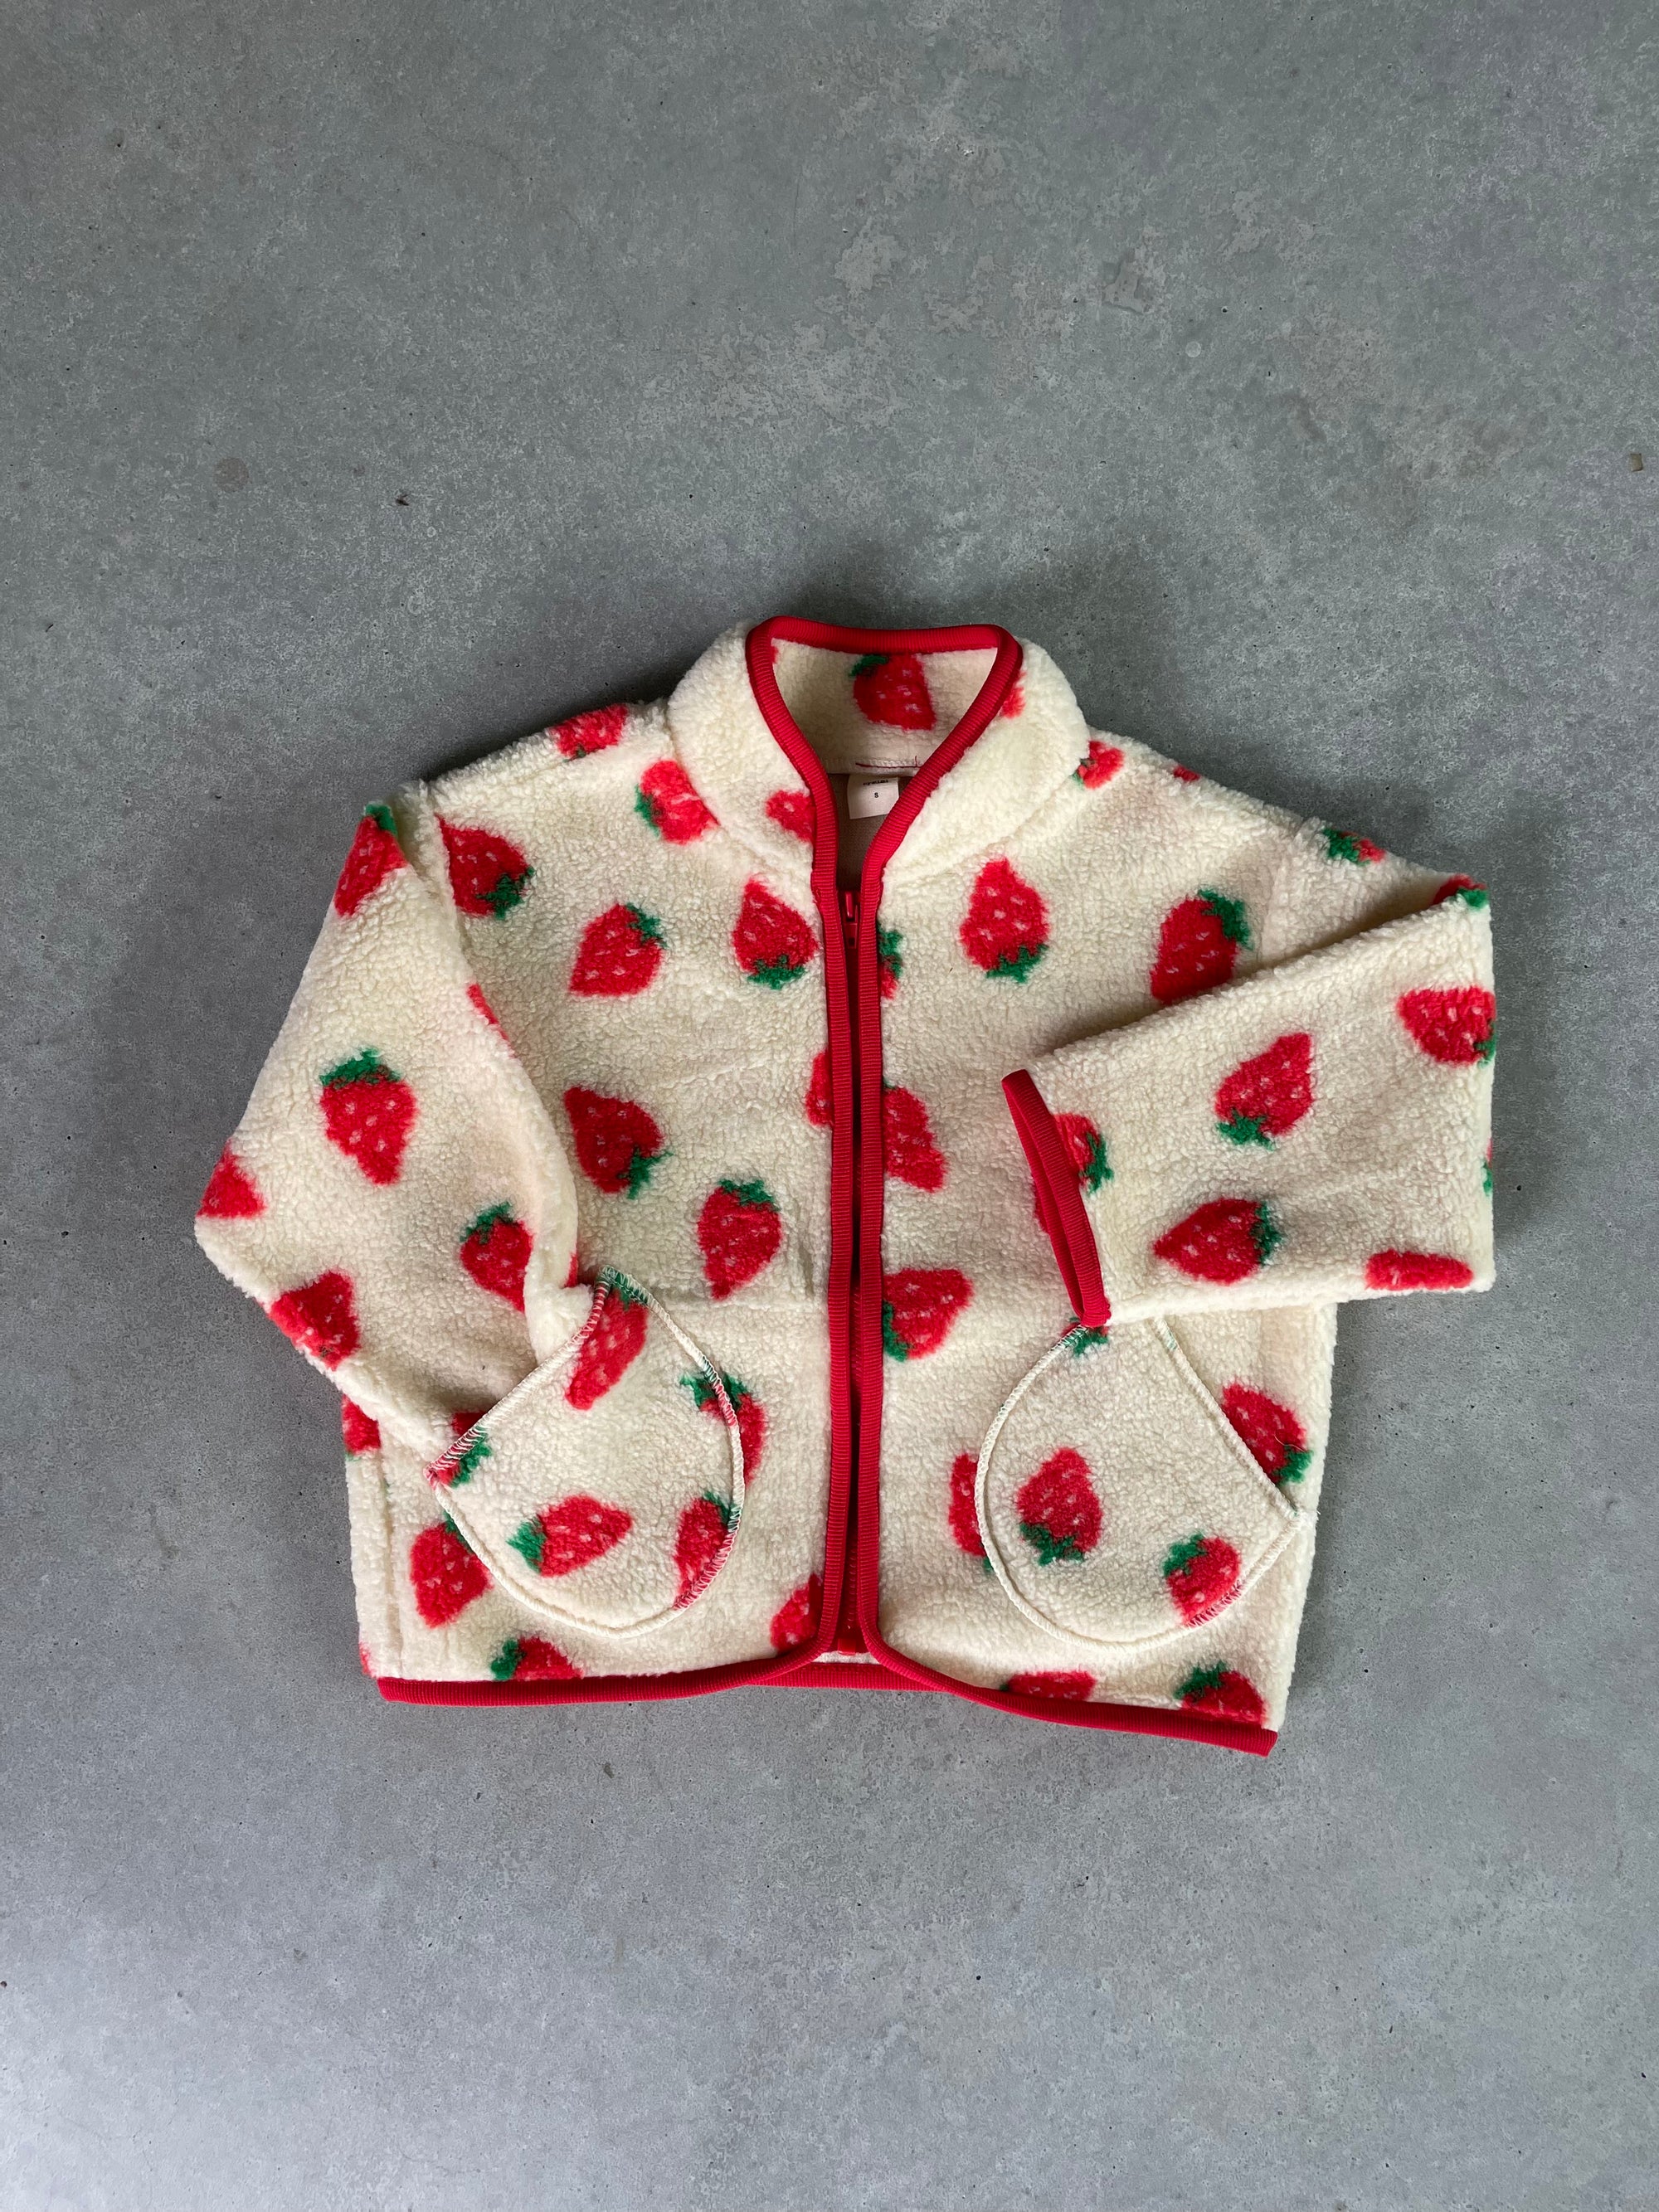 Strawberry teddy jacket